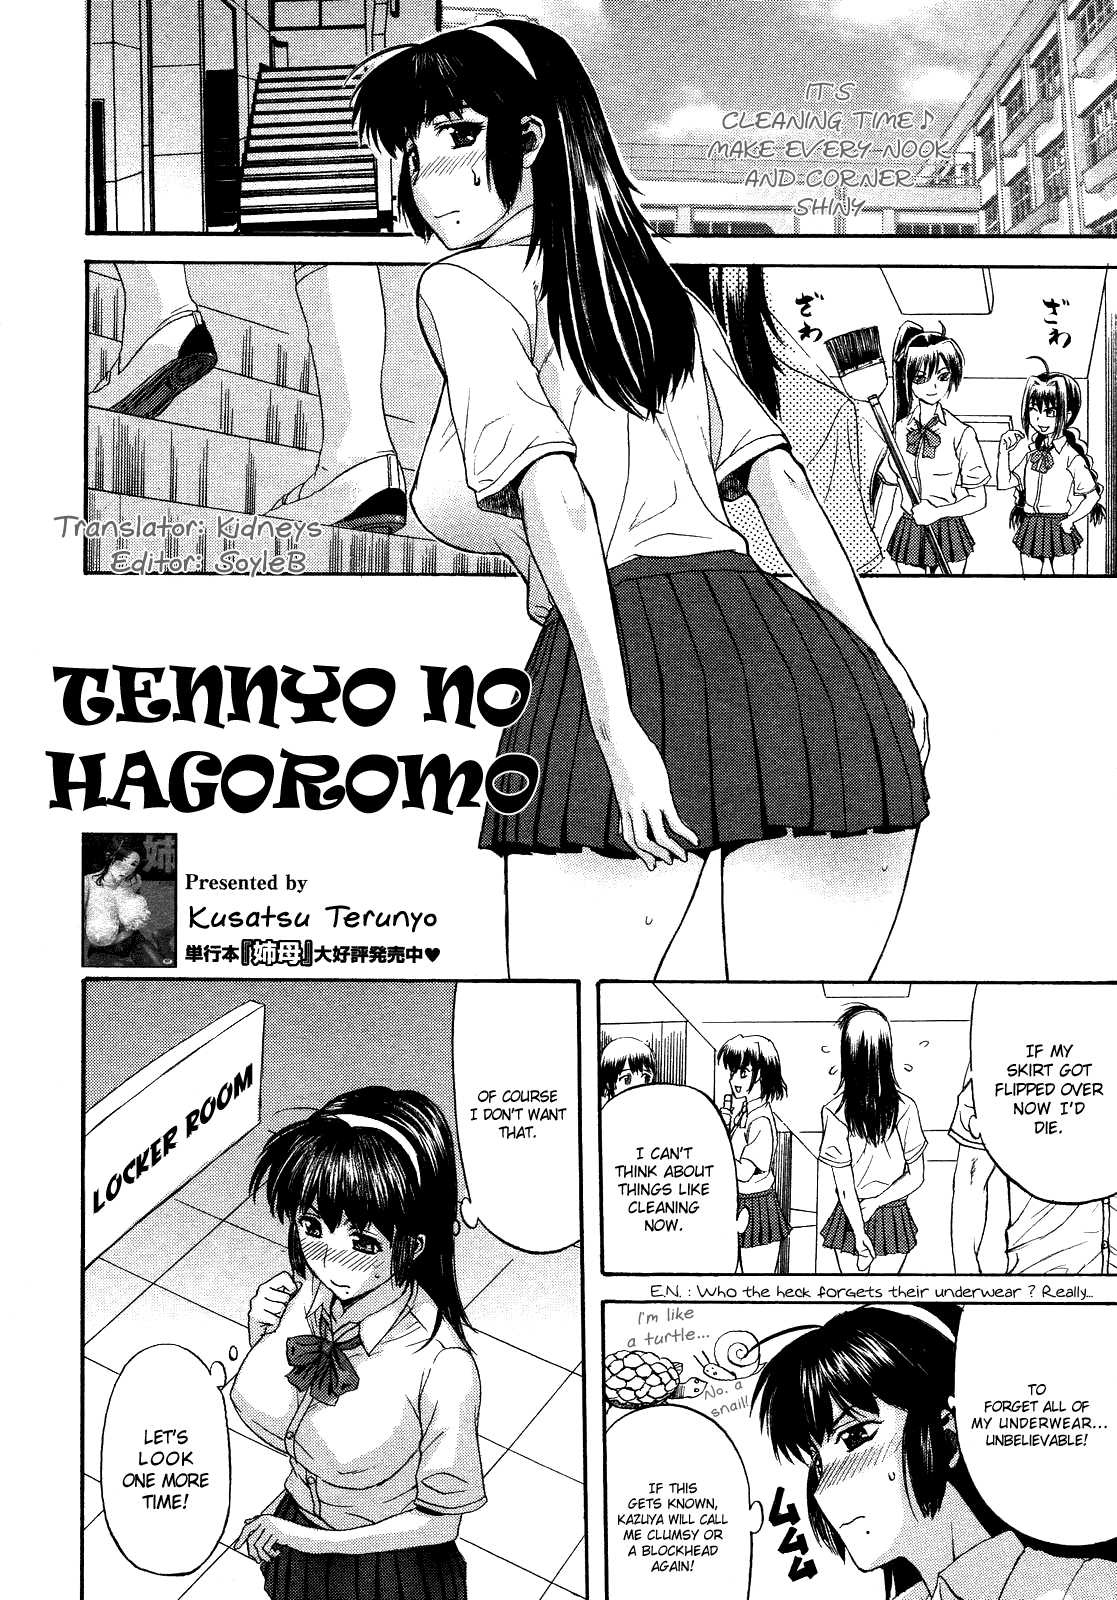 [Terunyo Kusatsu] Tennyo no Hagoromo Ch1-3 (English) 